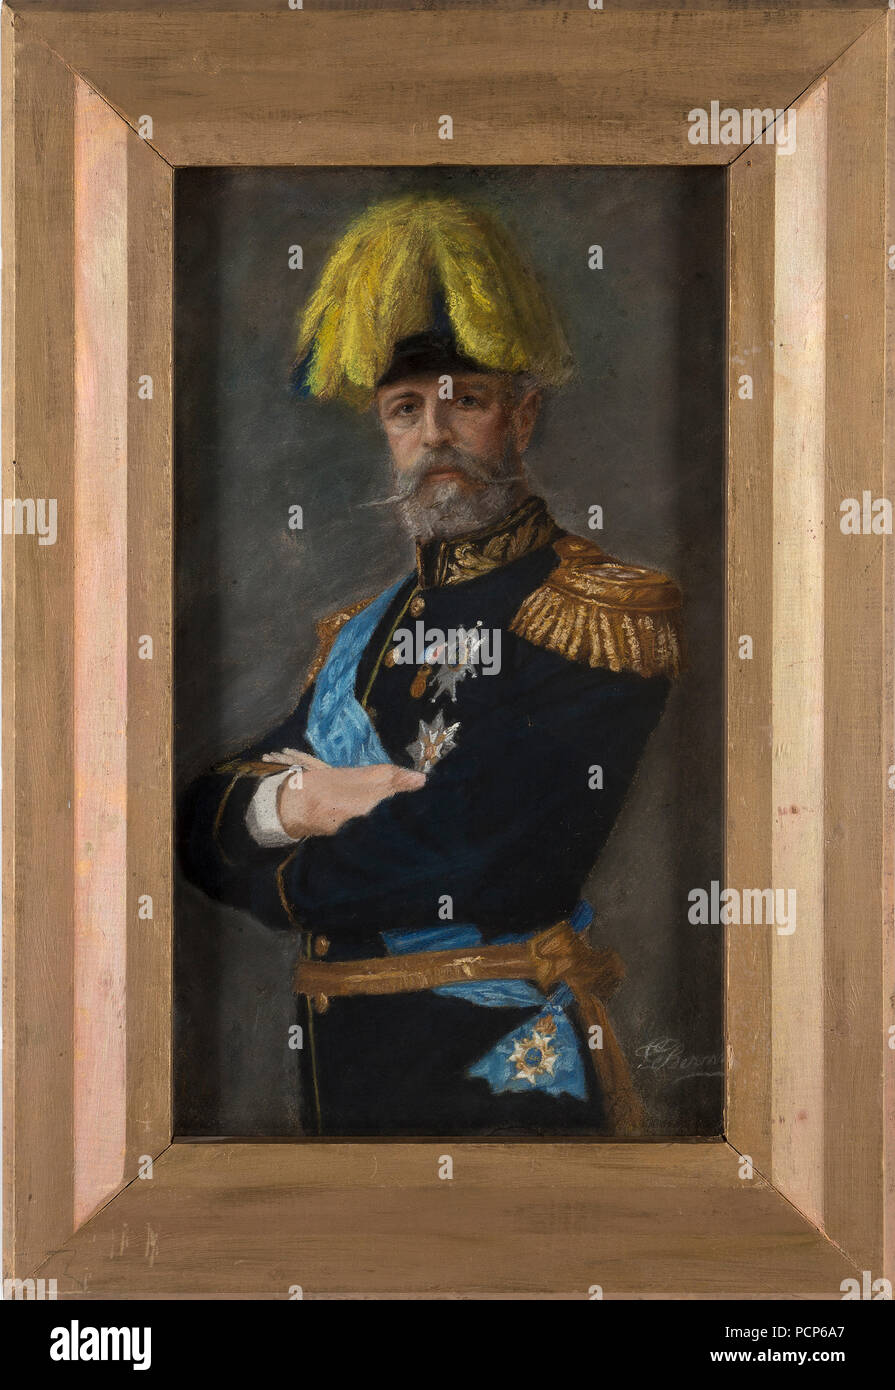 Oscar II (1829-1907), King of Sweden. Stock Photo